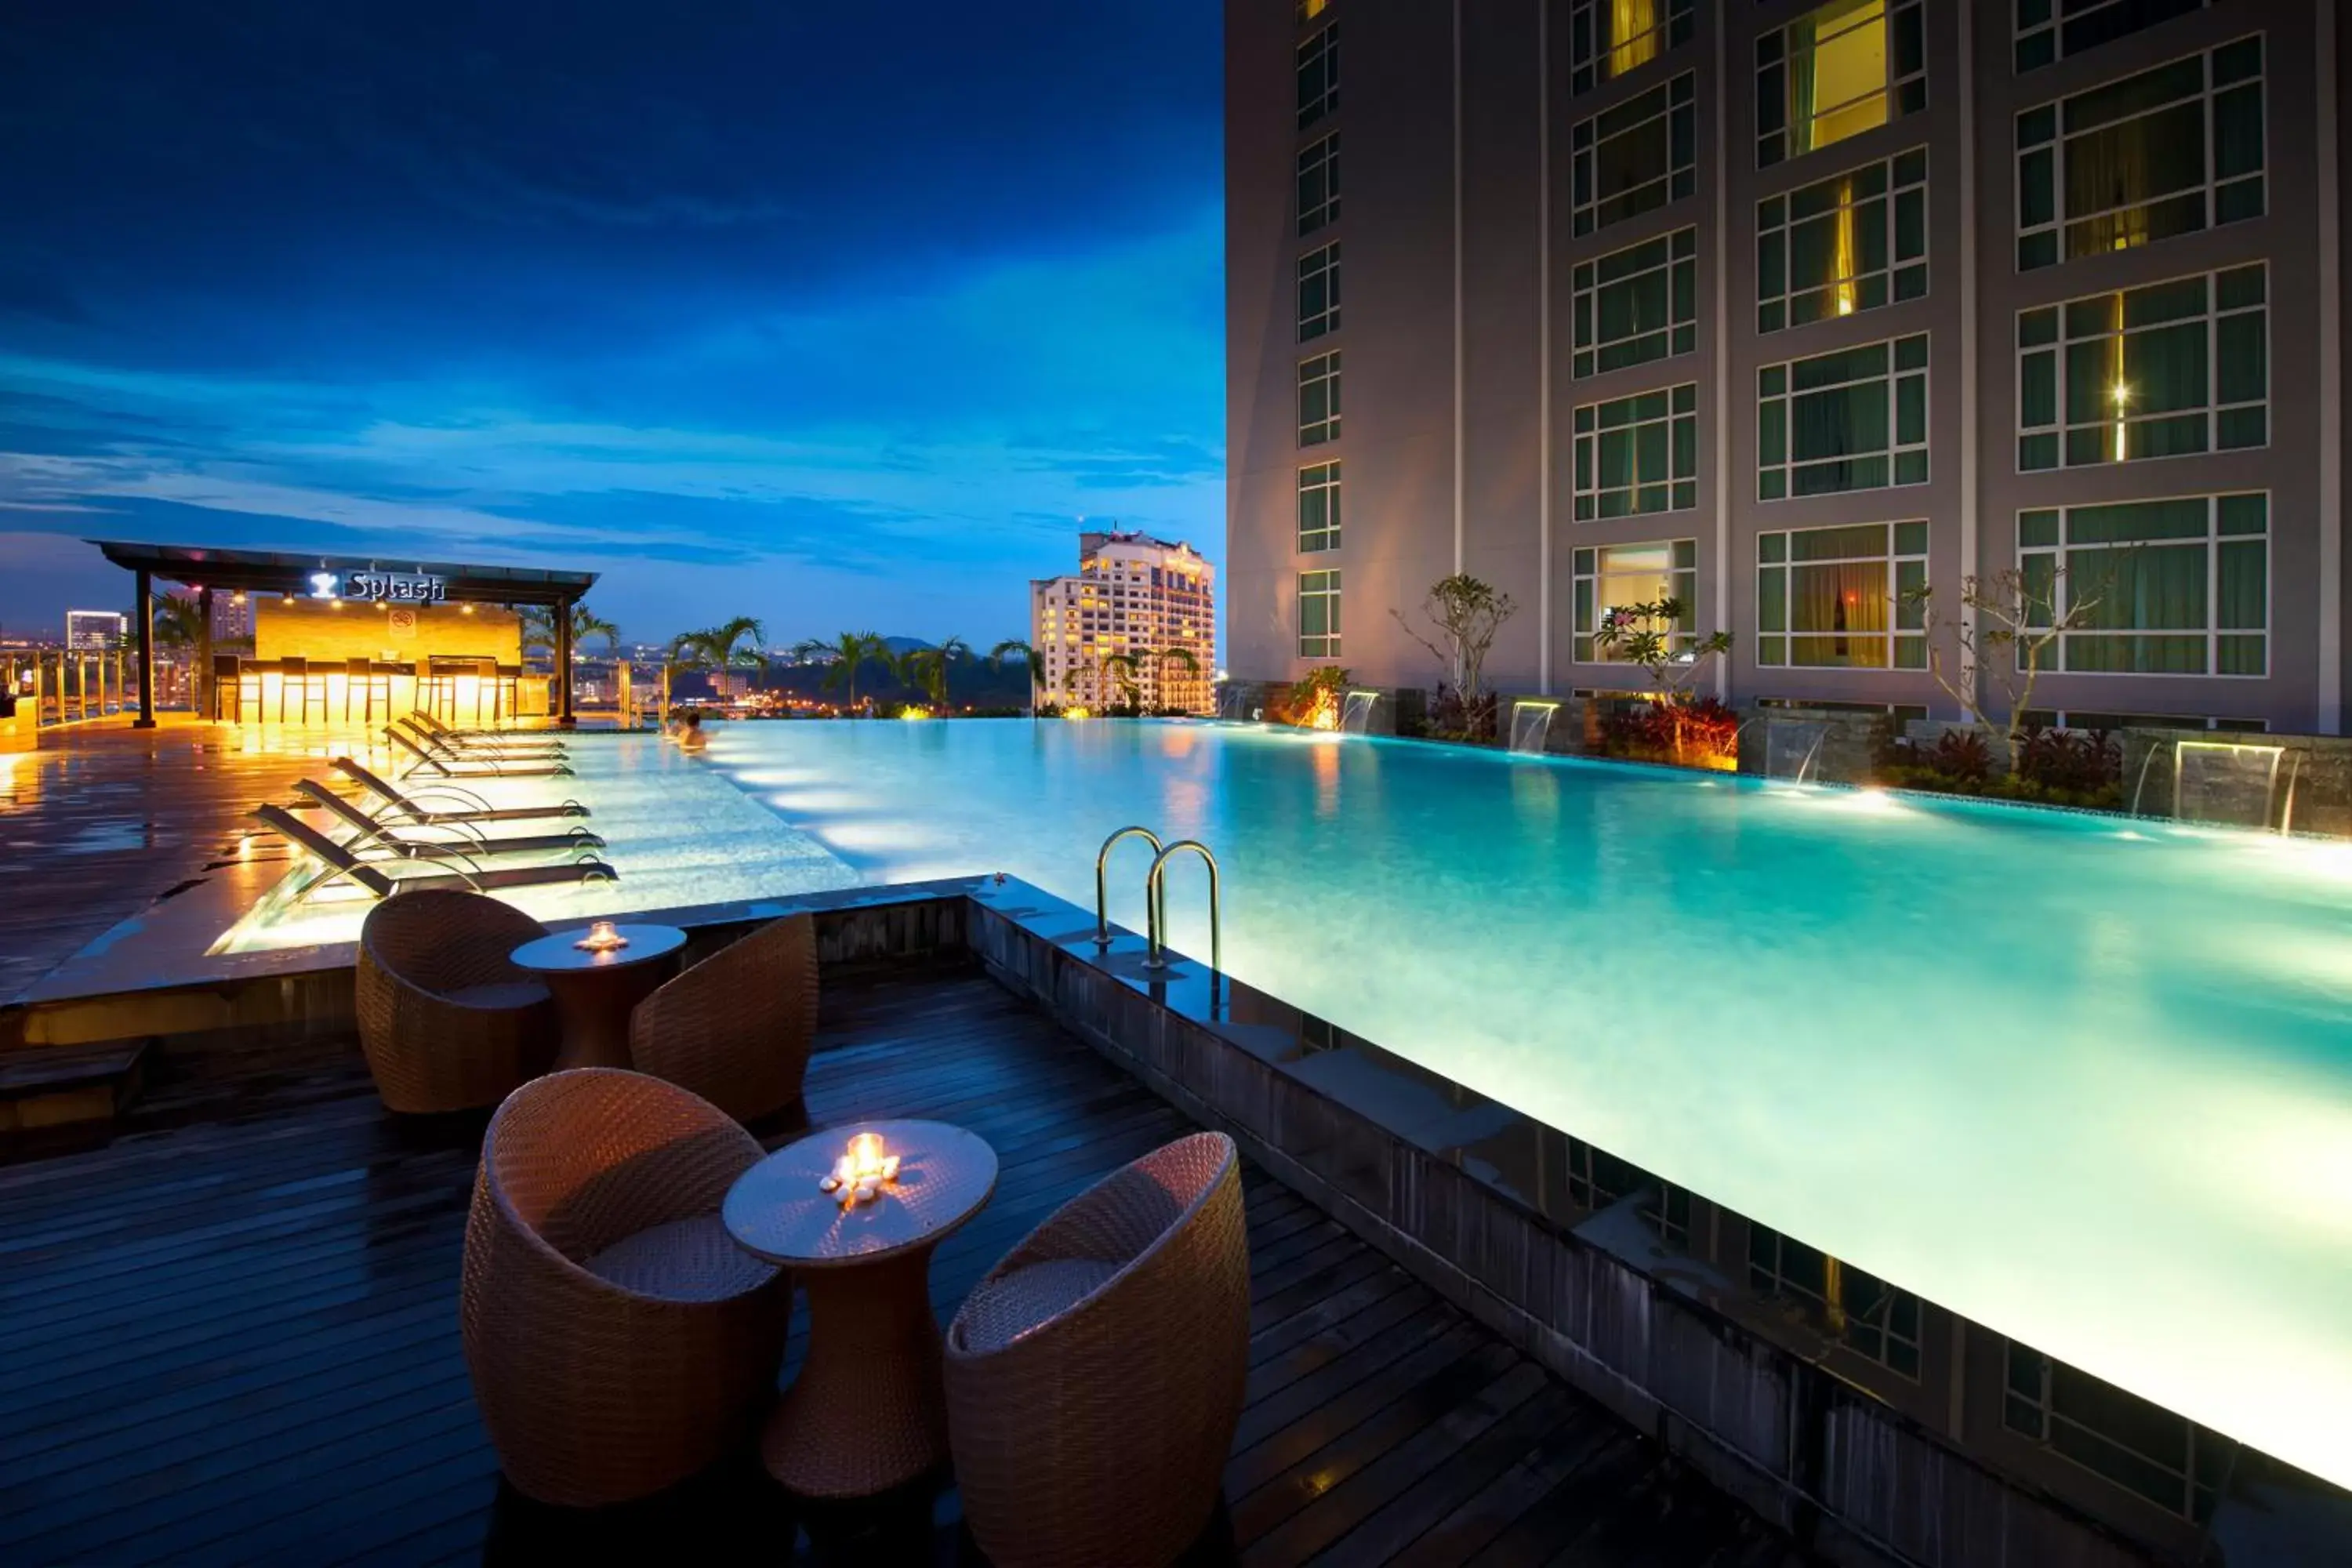 Restaurant/places to eat, Swimming Pool in Hatten Hotel Melaka